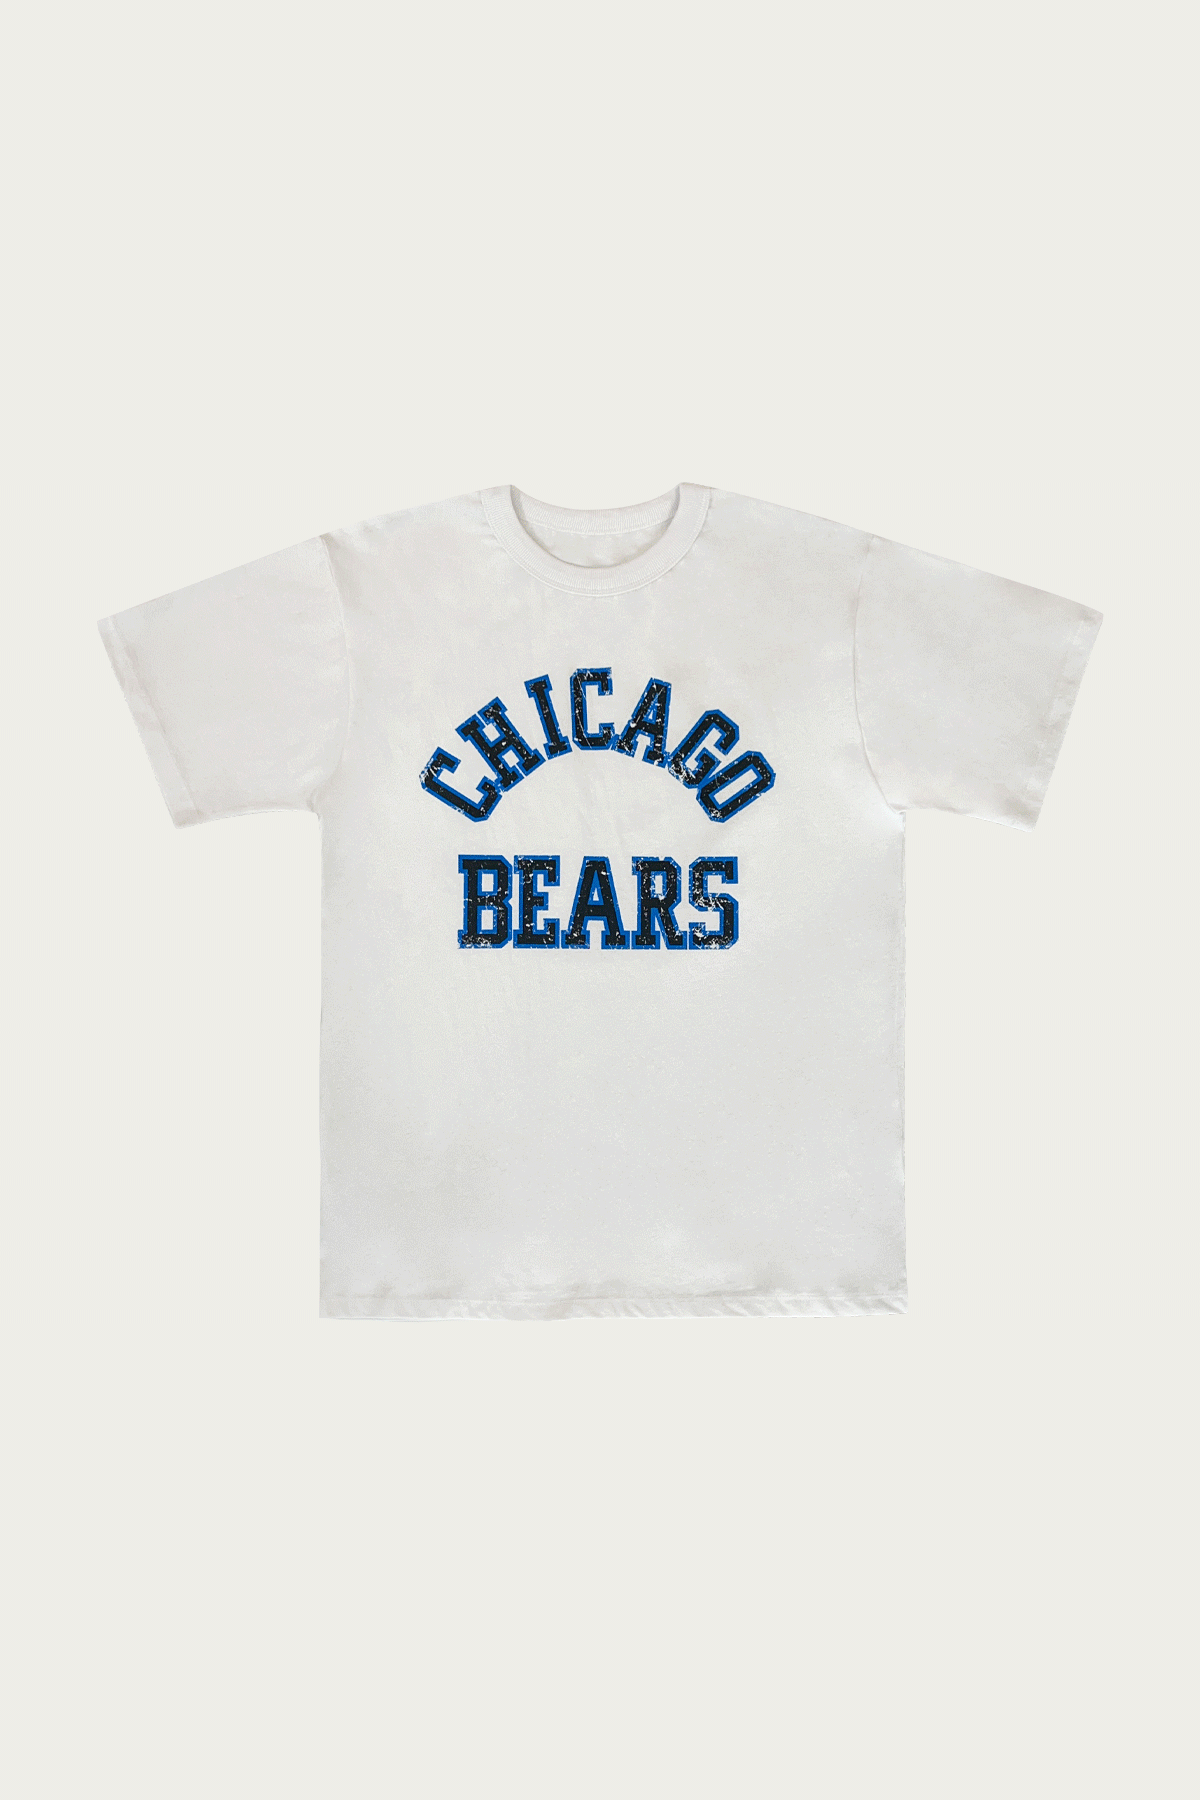 시카고 베어스 티셔츠